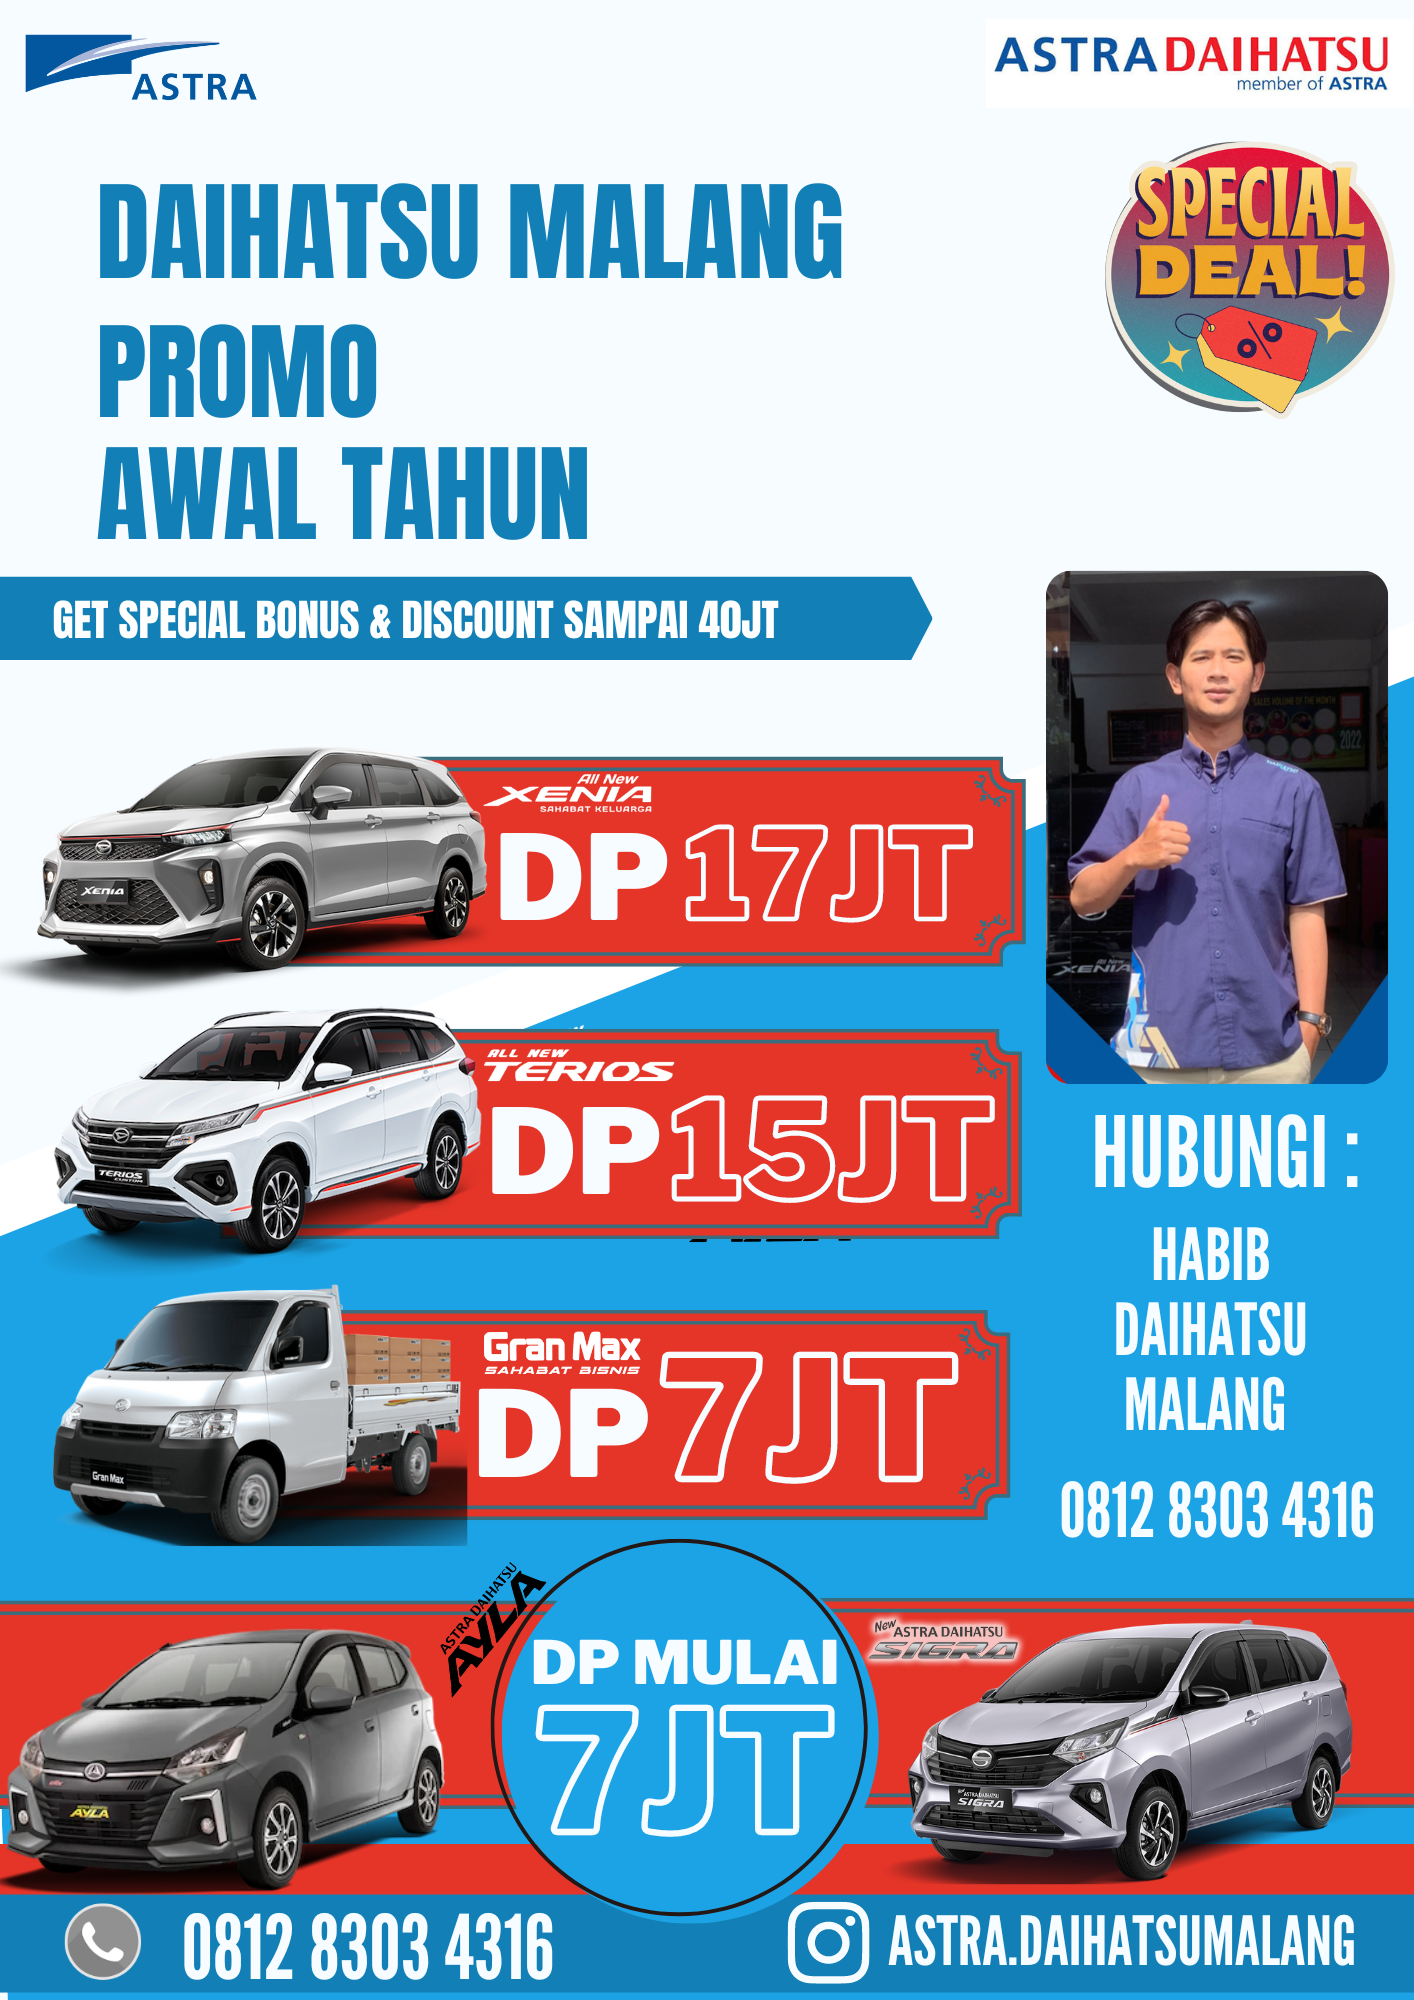 Daihatsu Malang Promo Awal Tahun 